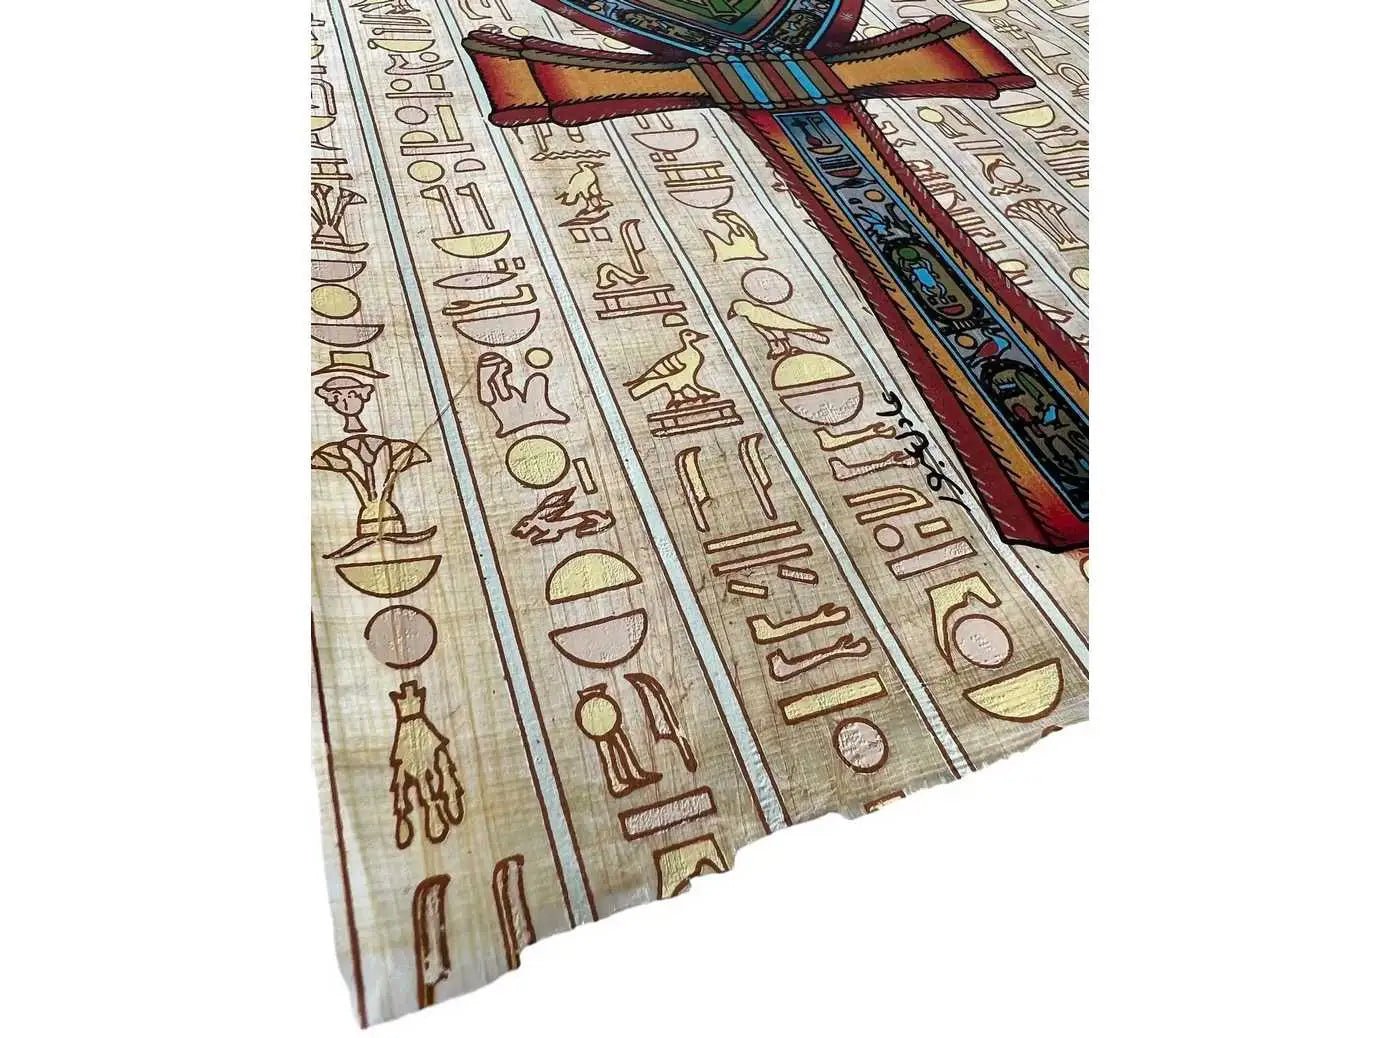 Ankh • Endless Life - Egyptian Crafts - Egyptian Art - Egyptian Papyrus Decor - Egyptian Hieroglyphs - Wall Art Papyrus